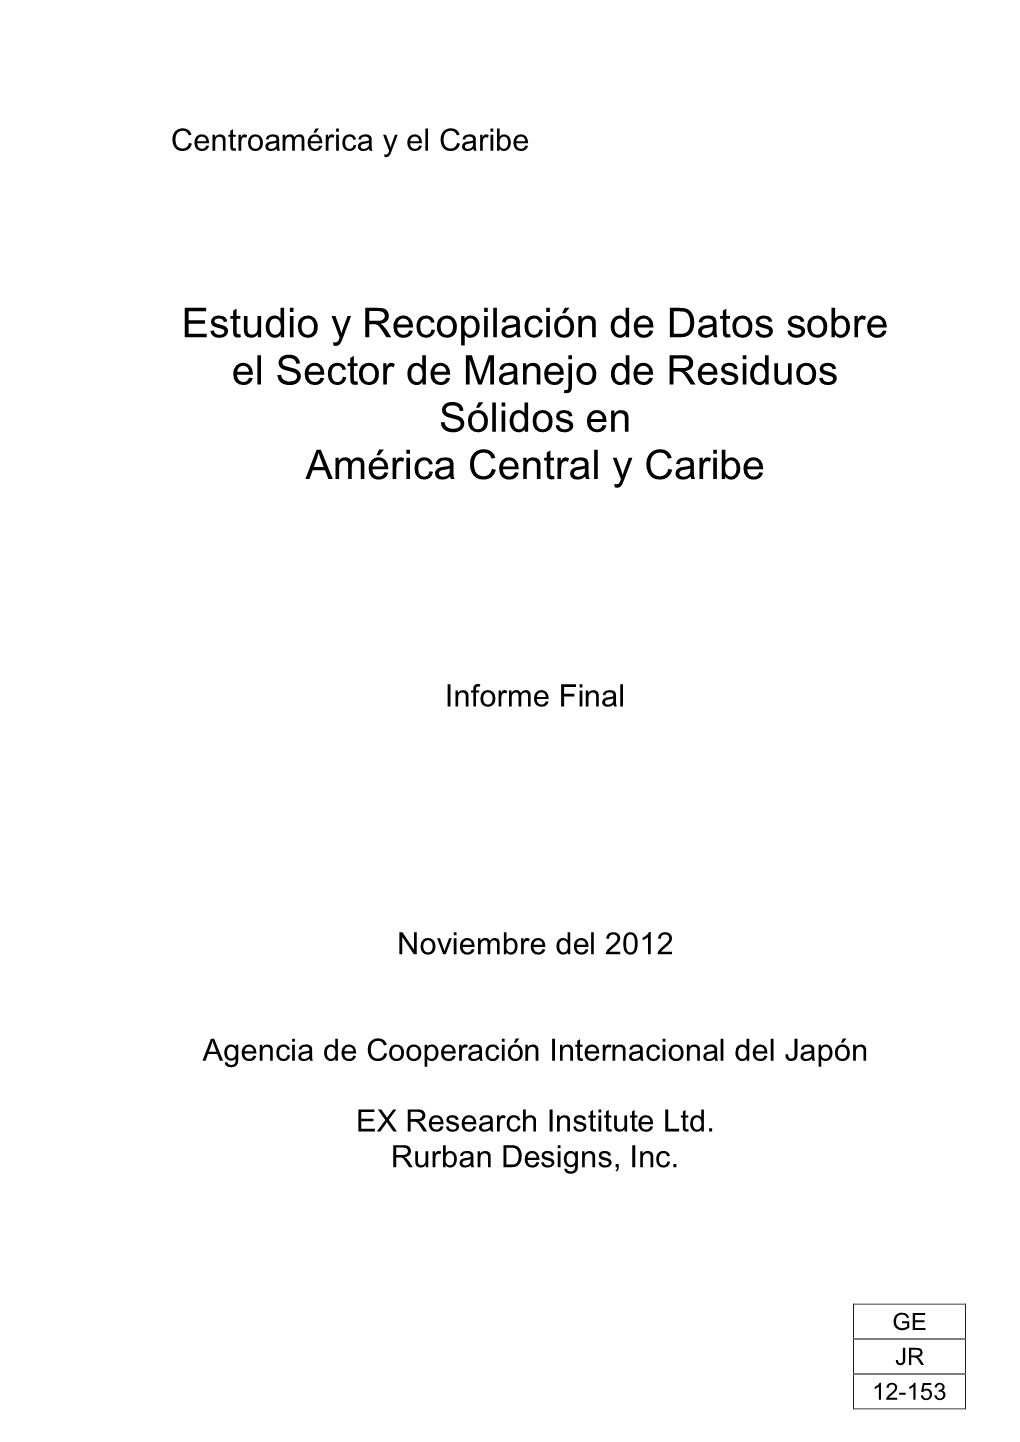 Estudio Y Recopilación De Datos Sobre El Sector De Manejo De Residuos Sólidos En América Central Y Caribe